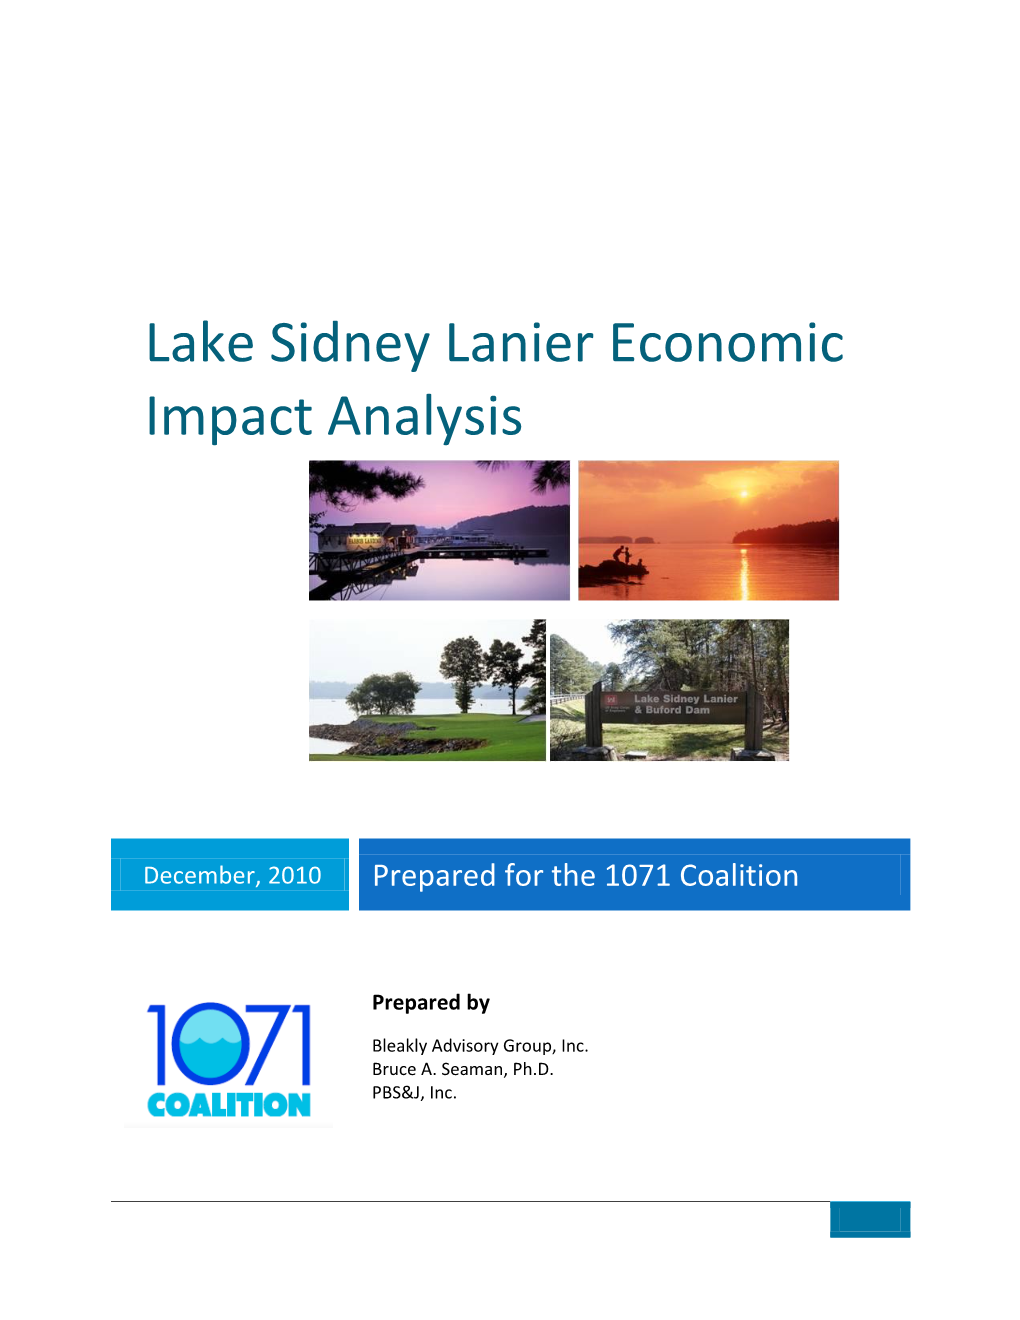 Lake Sidney Lanier Economic Impact Analysis